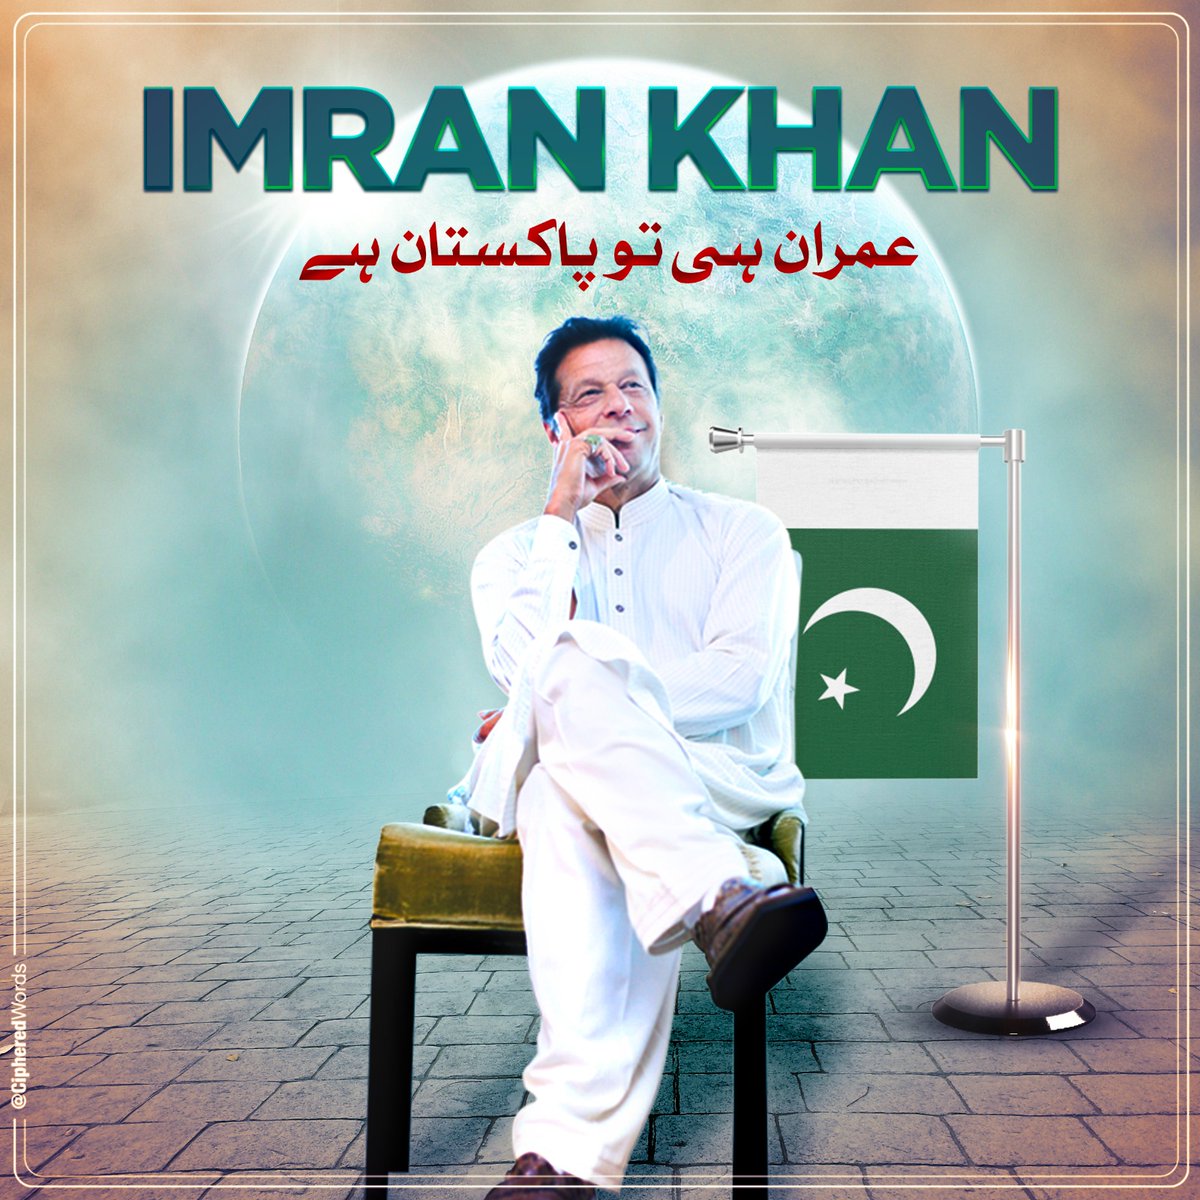 عمران خان واحد لیڈر ہے جس نے کشمیر کی آزادی پے زور دیا۔

#مفاہمت_نہیں_مزاحمت_کرو